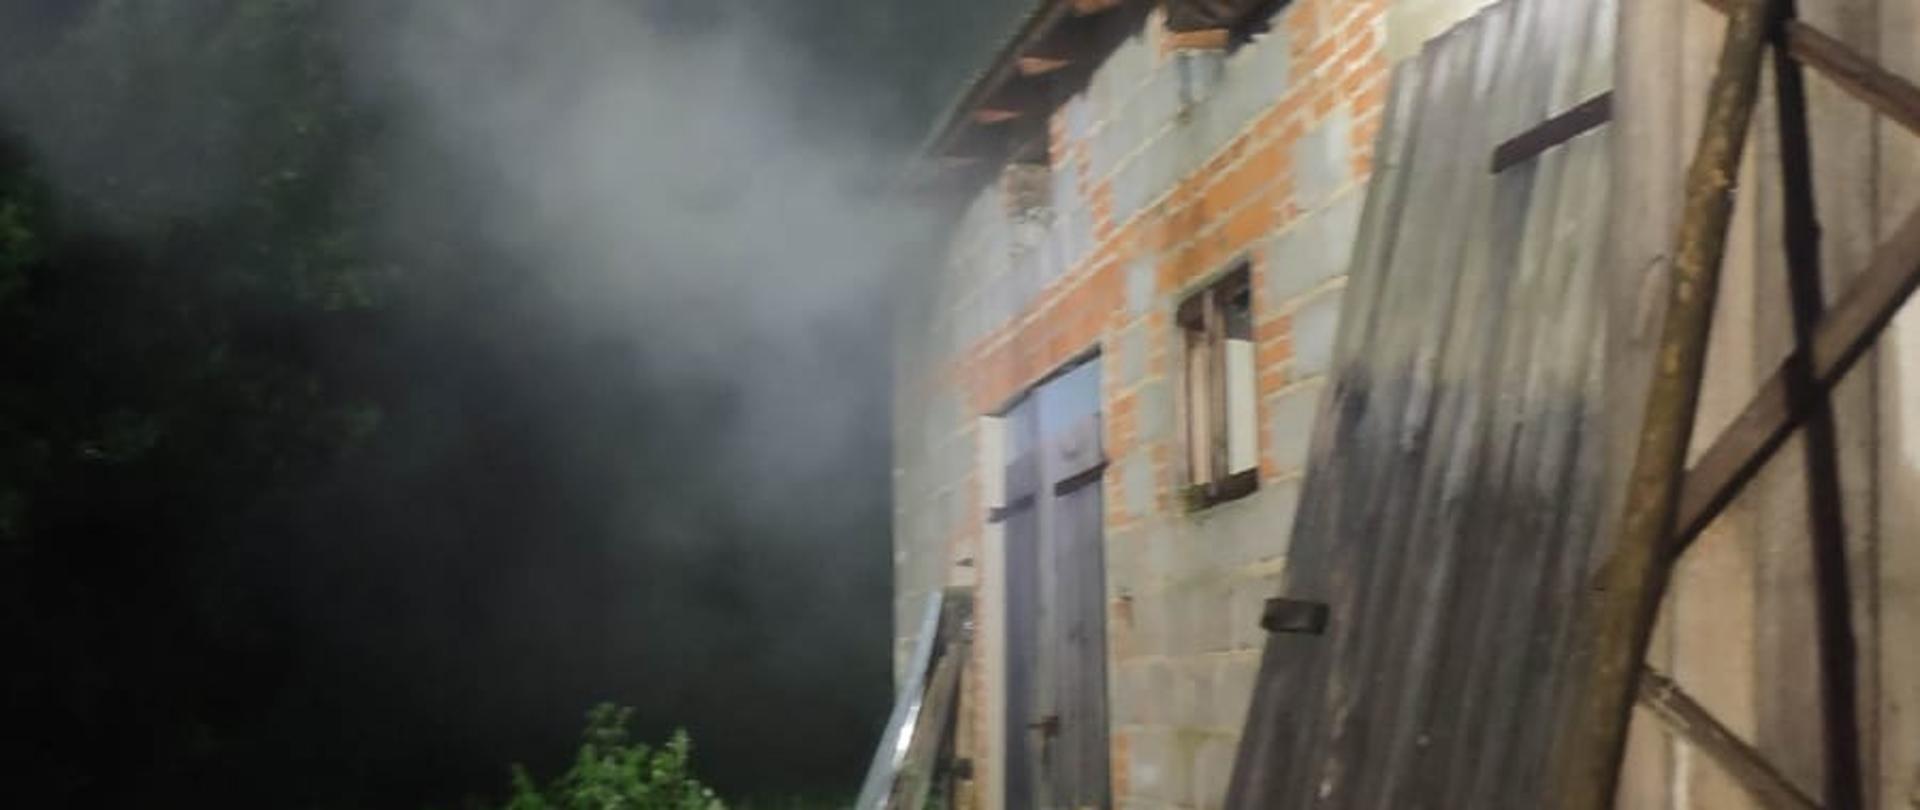 Zdjęcie przedstawia stodołę ceglaną, z której unosi się dym.